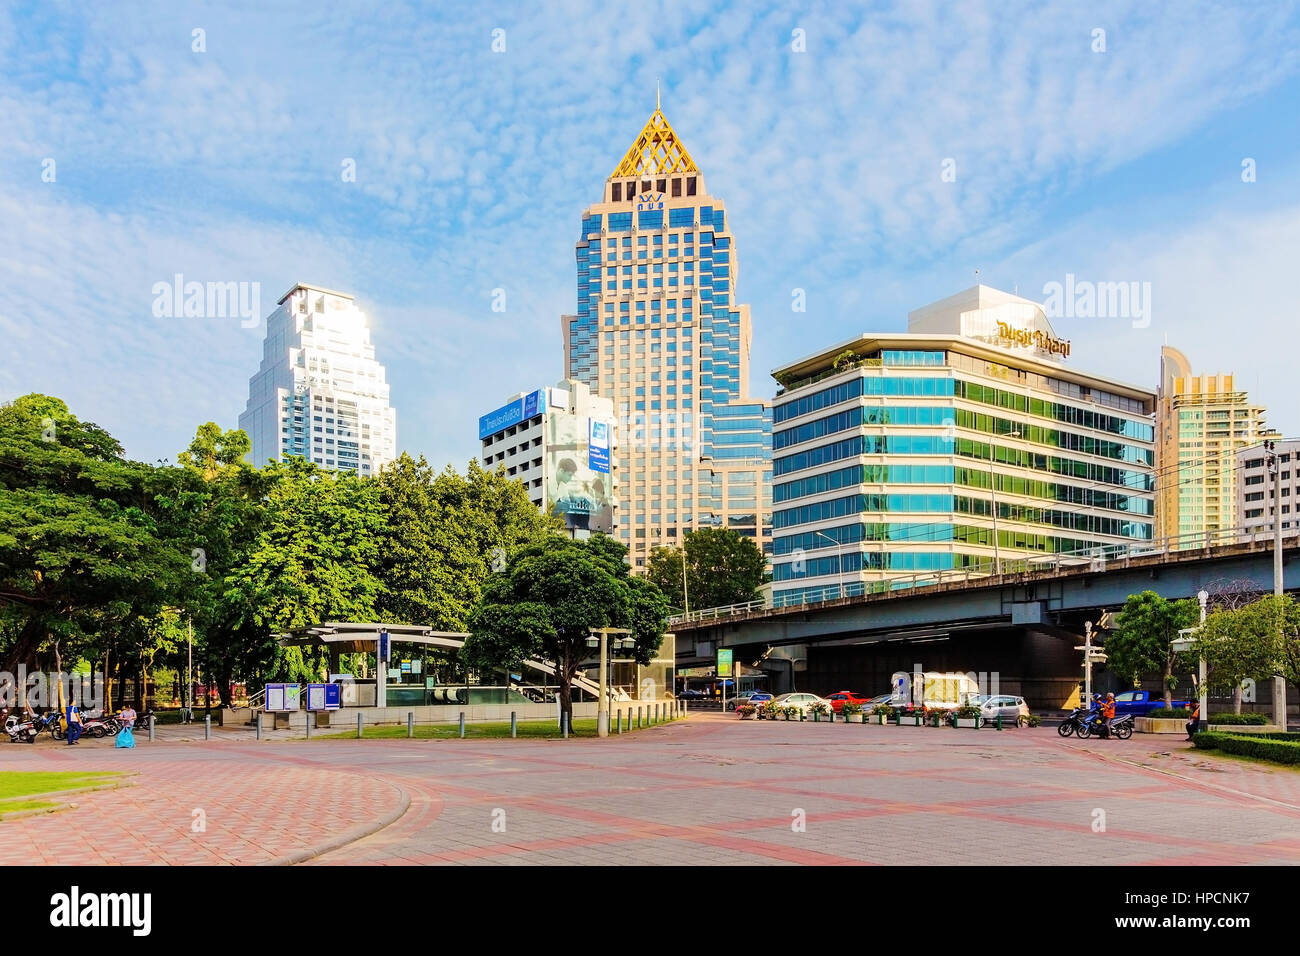 BANGKOK - 14 settembre: Hotel area nel centro cittadino di Bangkok con stazione di Silom in primo piano. Silom è un'area centrale degli affari che attrae anche molti Foto Stock